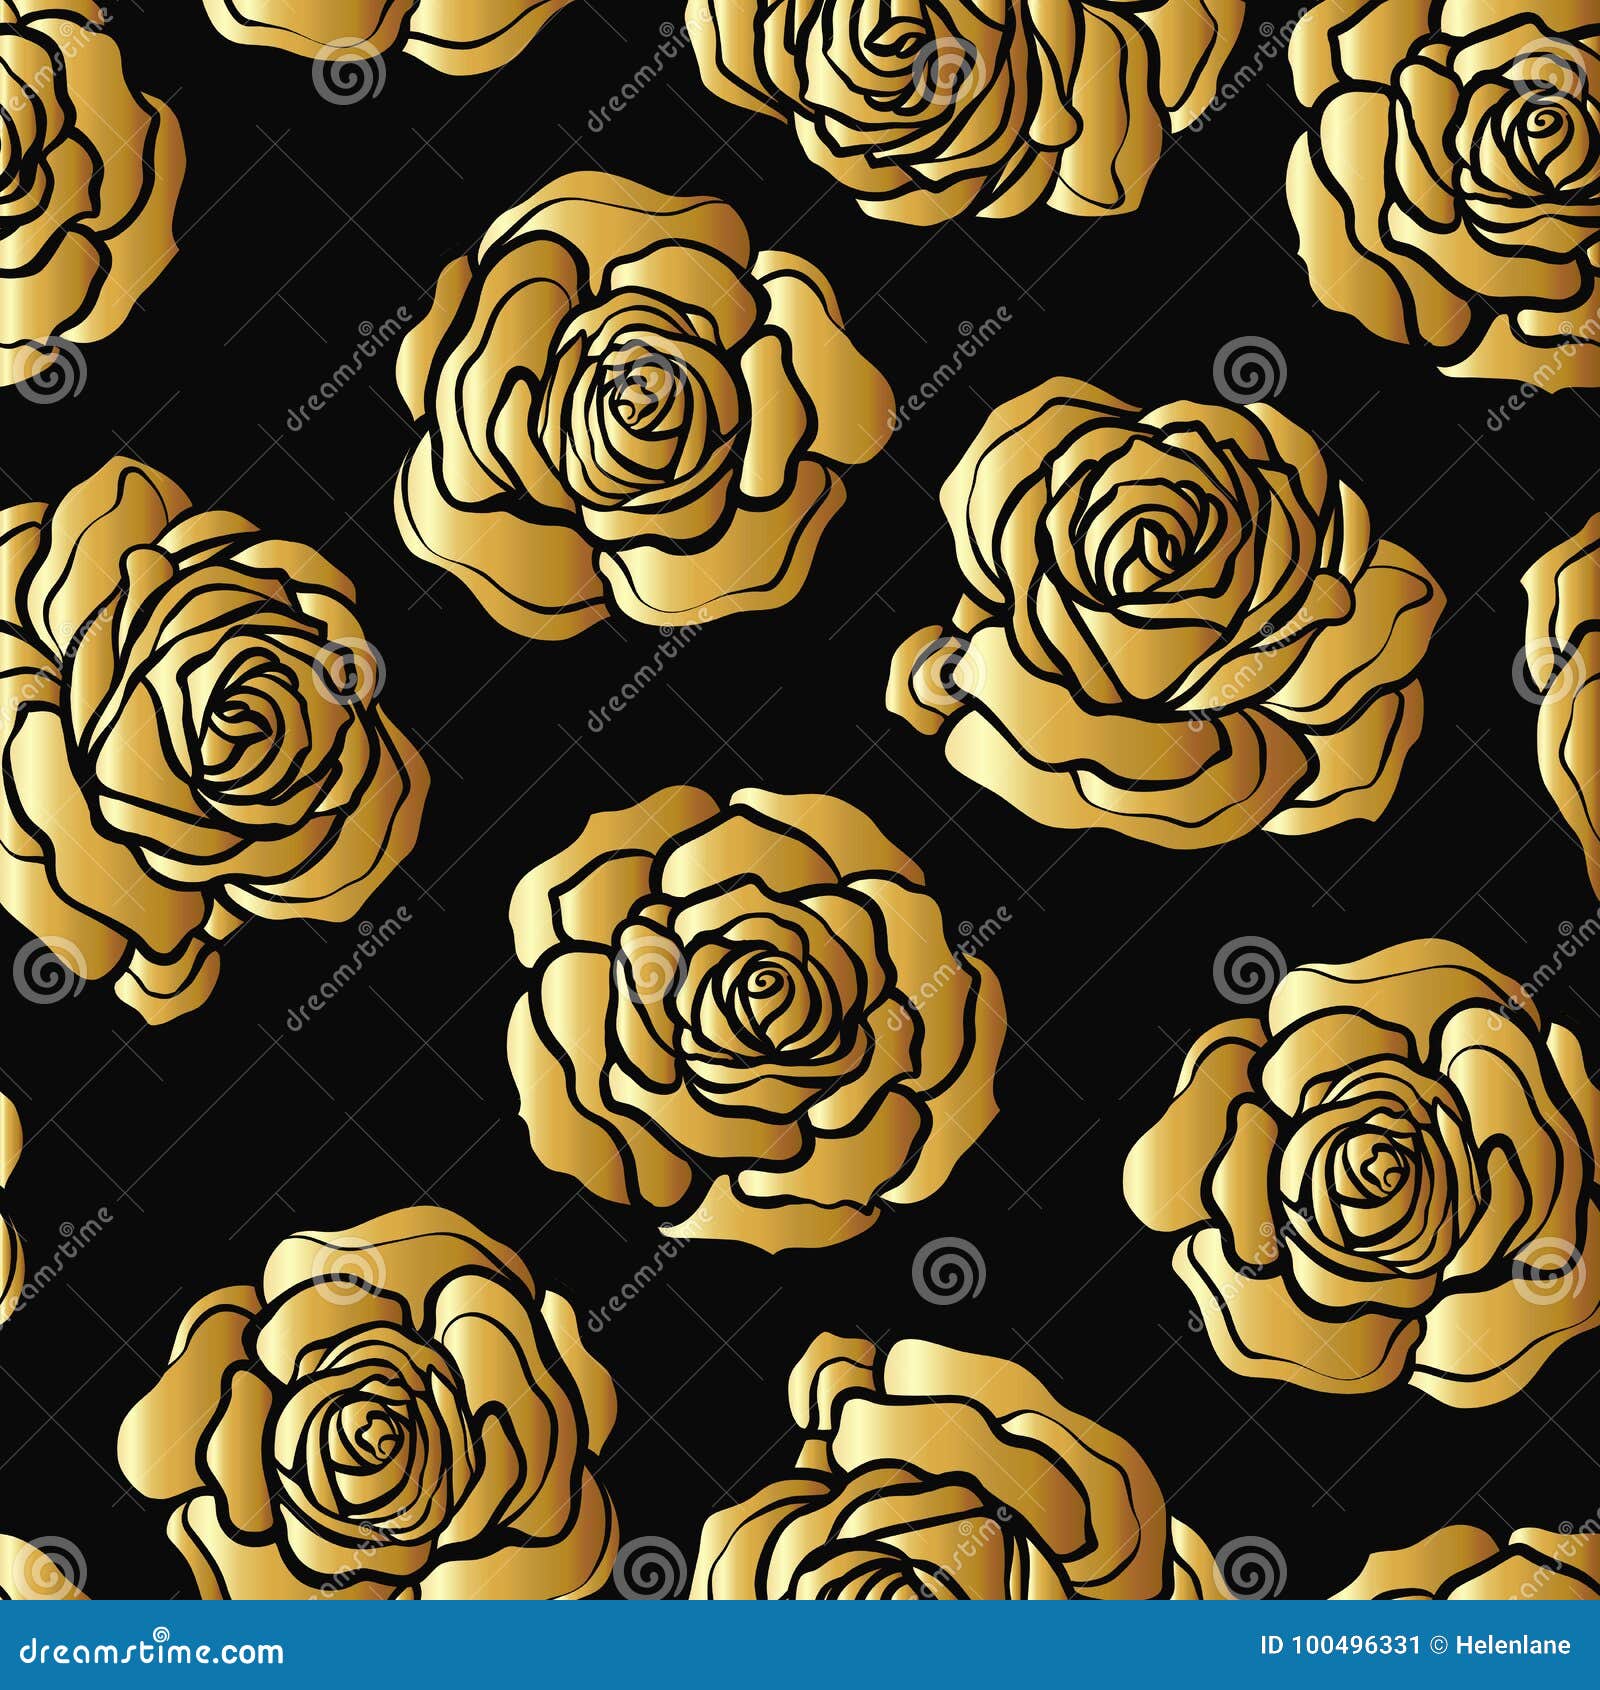 Hoa hồng vàng: Bức hình với hoa hồng vàng sáng lấp lánh sẽ khiến bạn say đắm với vẻ đẹp tự nhiên và thơ mộng của chúng. Hãy đắm chìm trong sắc vàng rực rỡ của hoa hồng vàng và cảm nhận sự tươi mới của mùa xuân trong hình ảnh này.